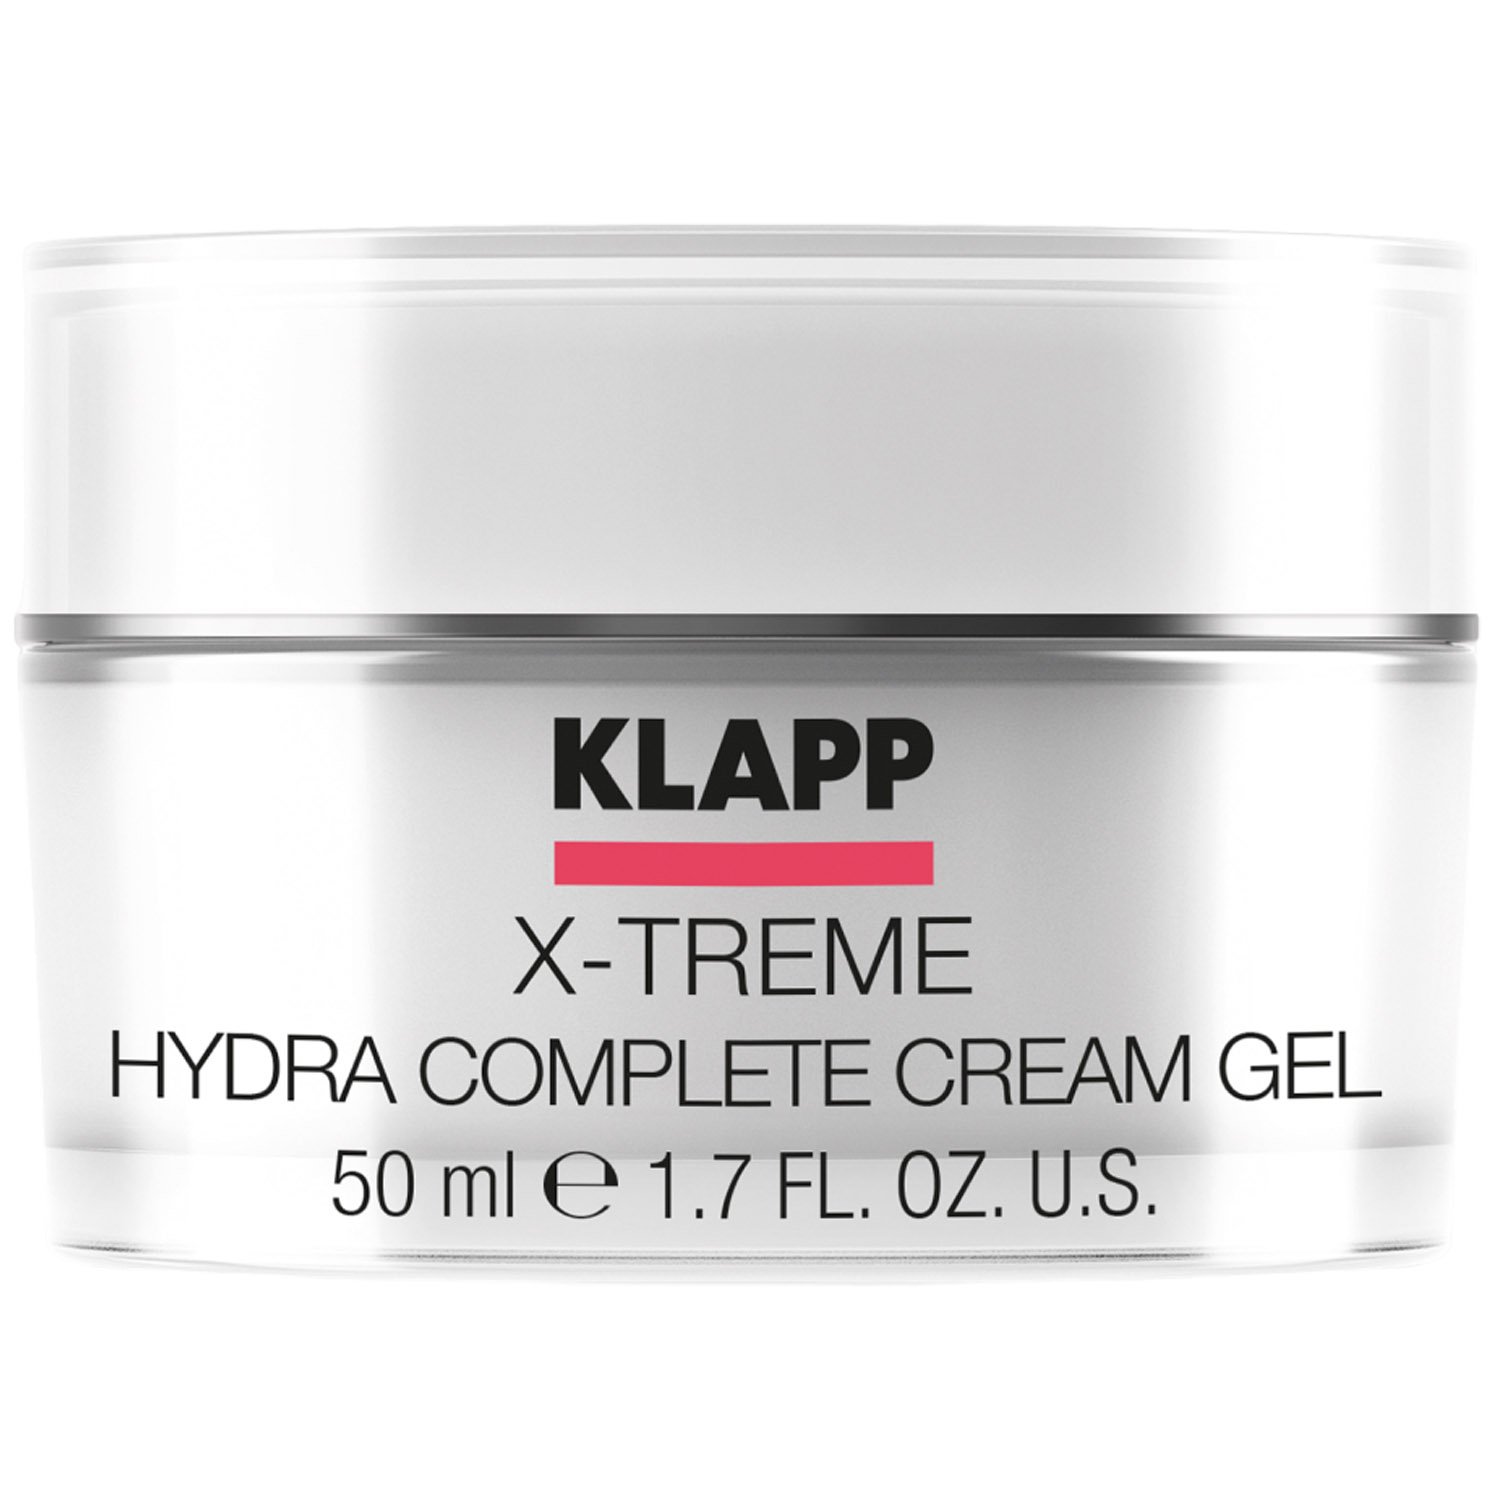 Крем для лица Klapp X-treme Hydra Complete, увлажняющий, 50 мл - фото 1